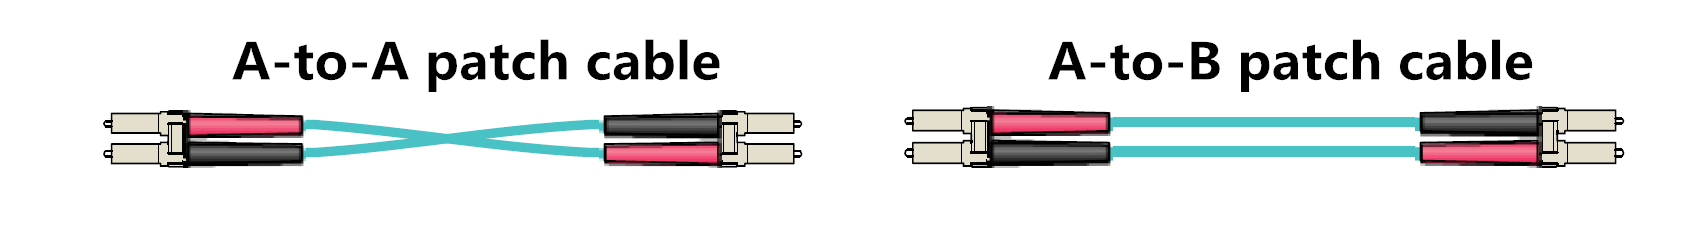 duplex-patch-cable